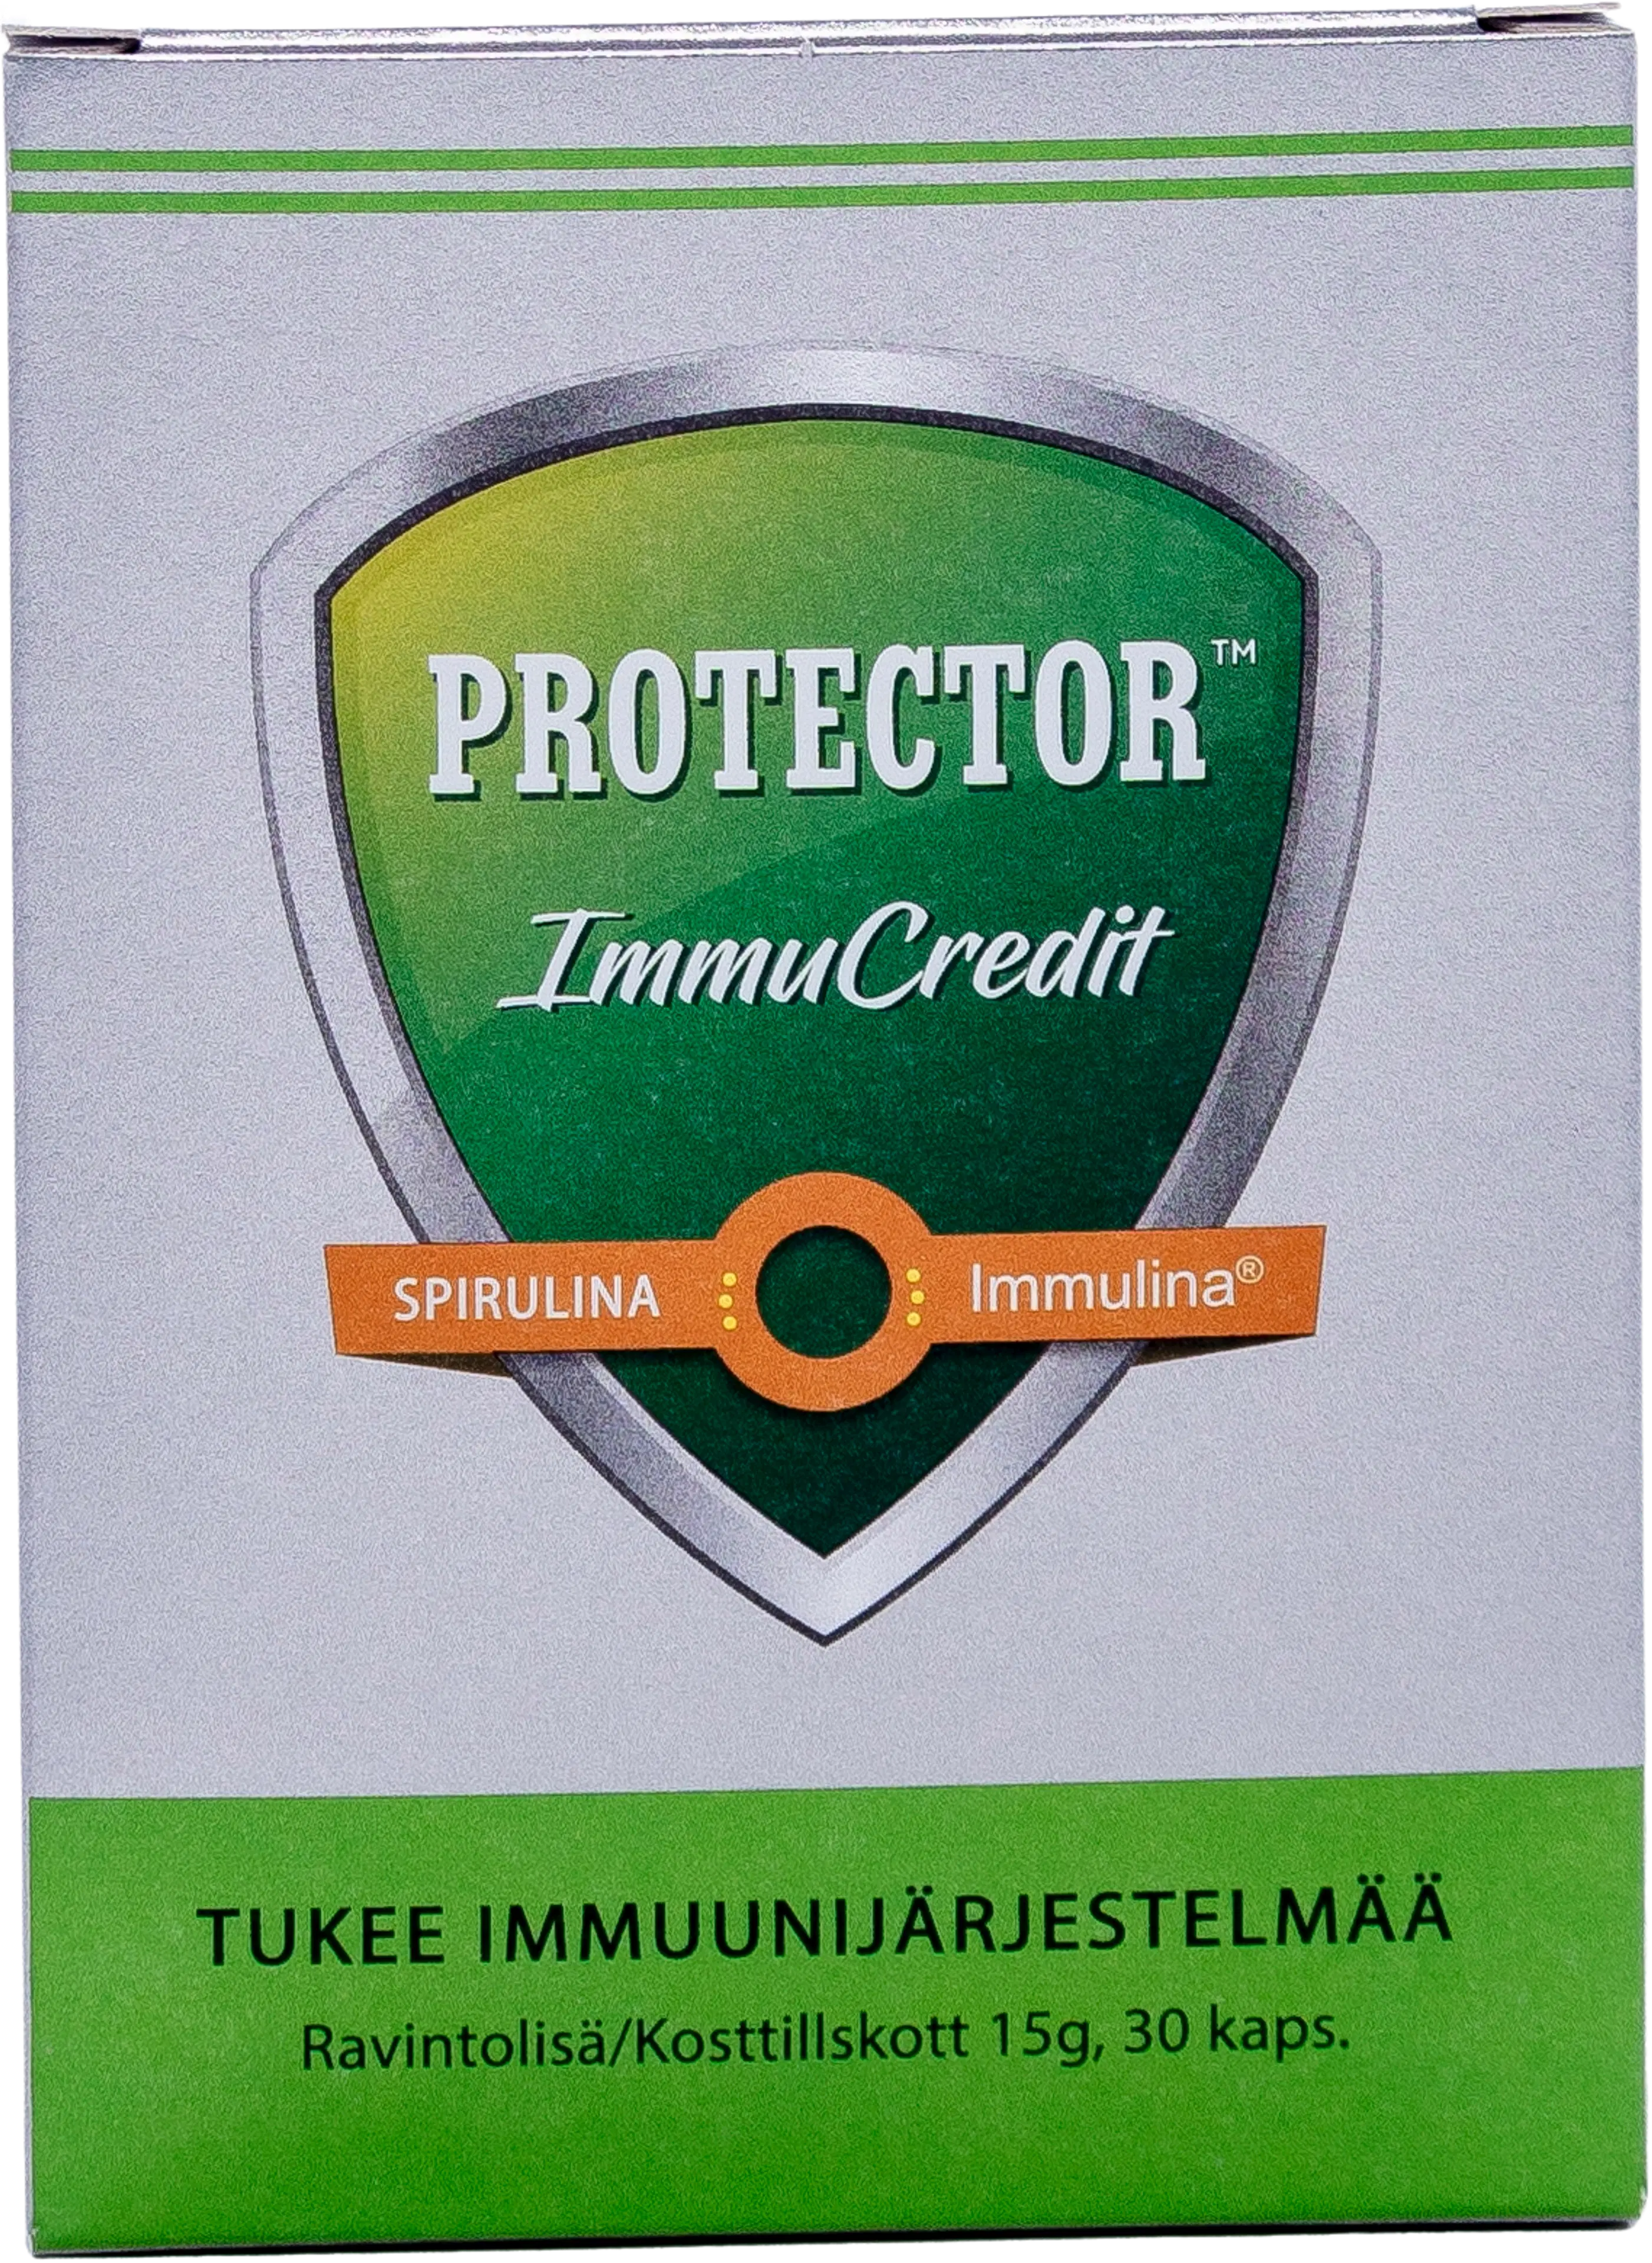 Protector™ ImmuCredit spirulinauutekapseli ravintolisä 30 kaps.